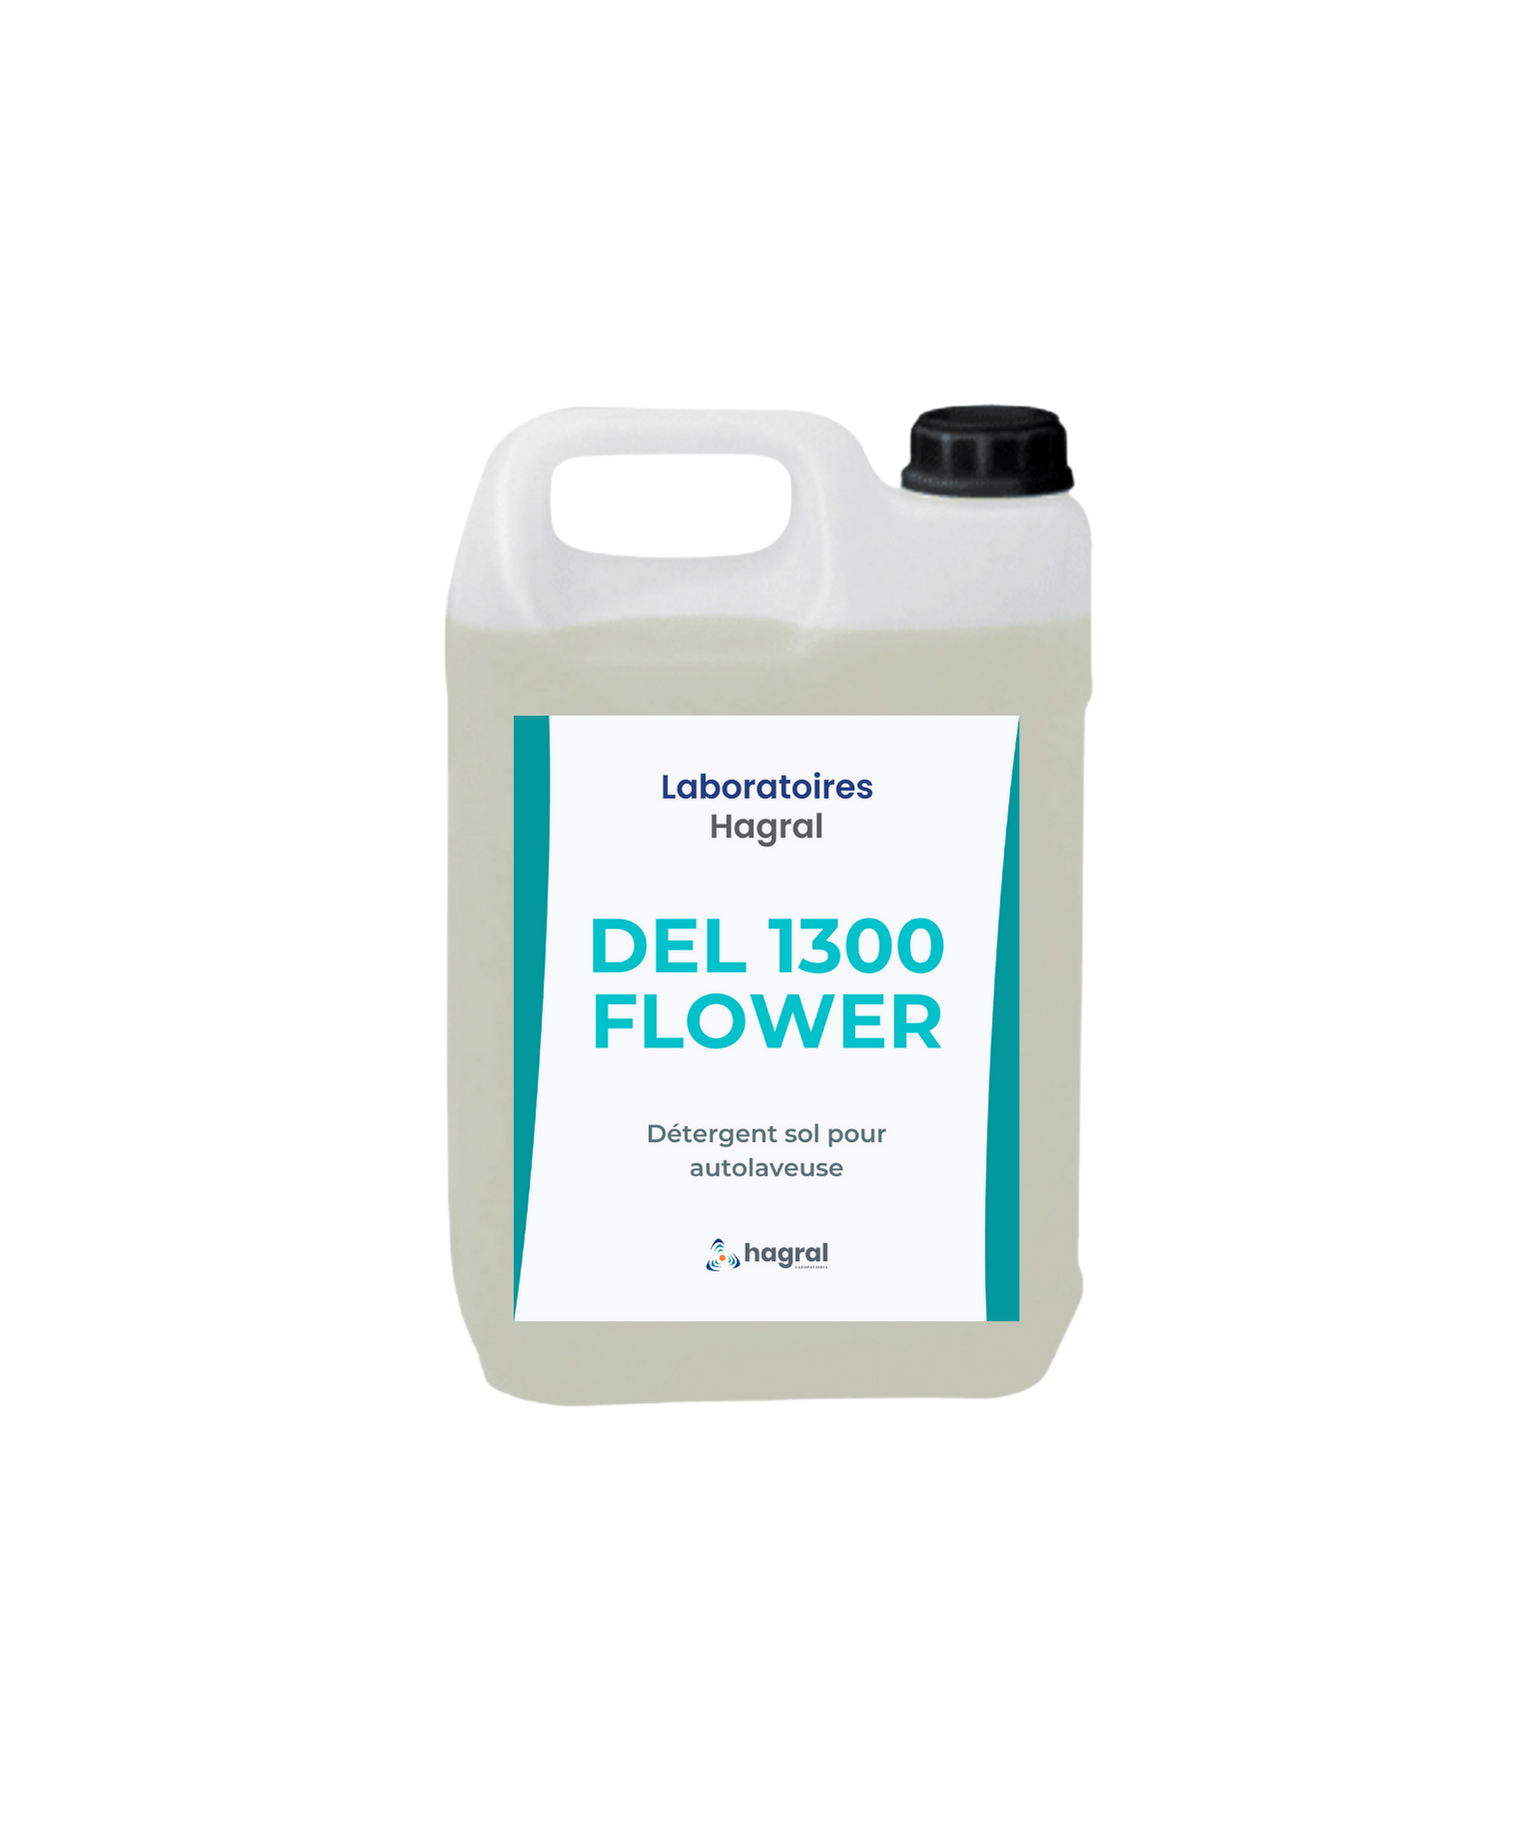 DEL 1300 FLOWER